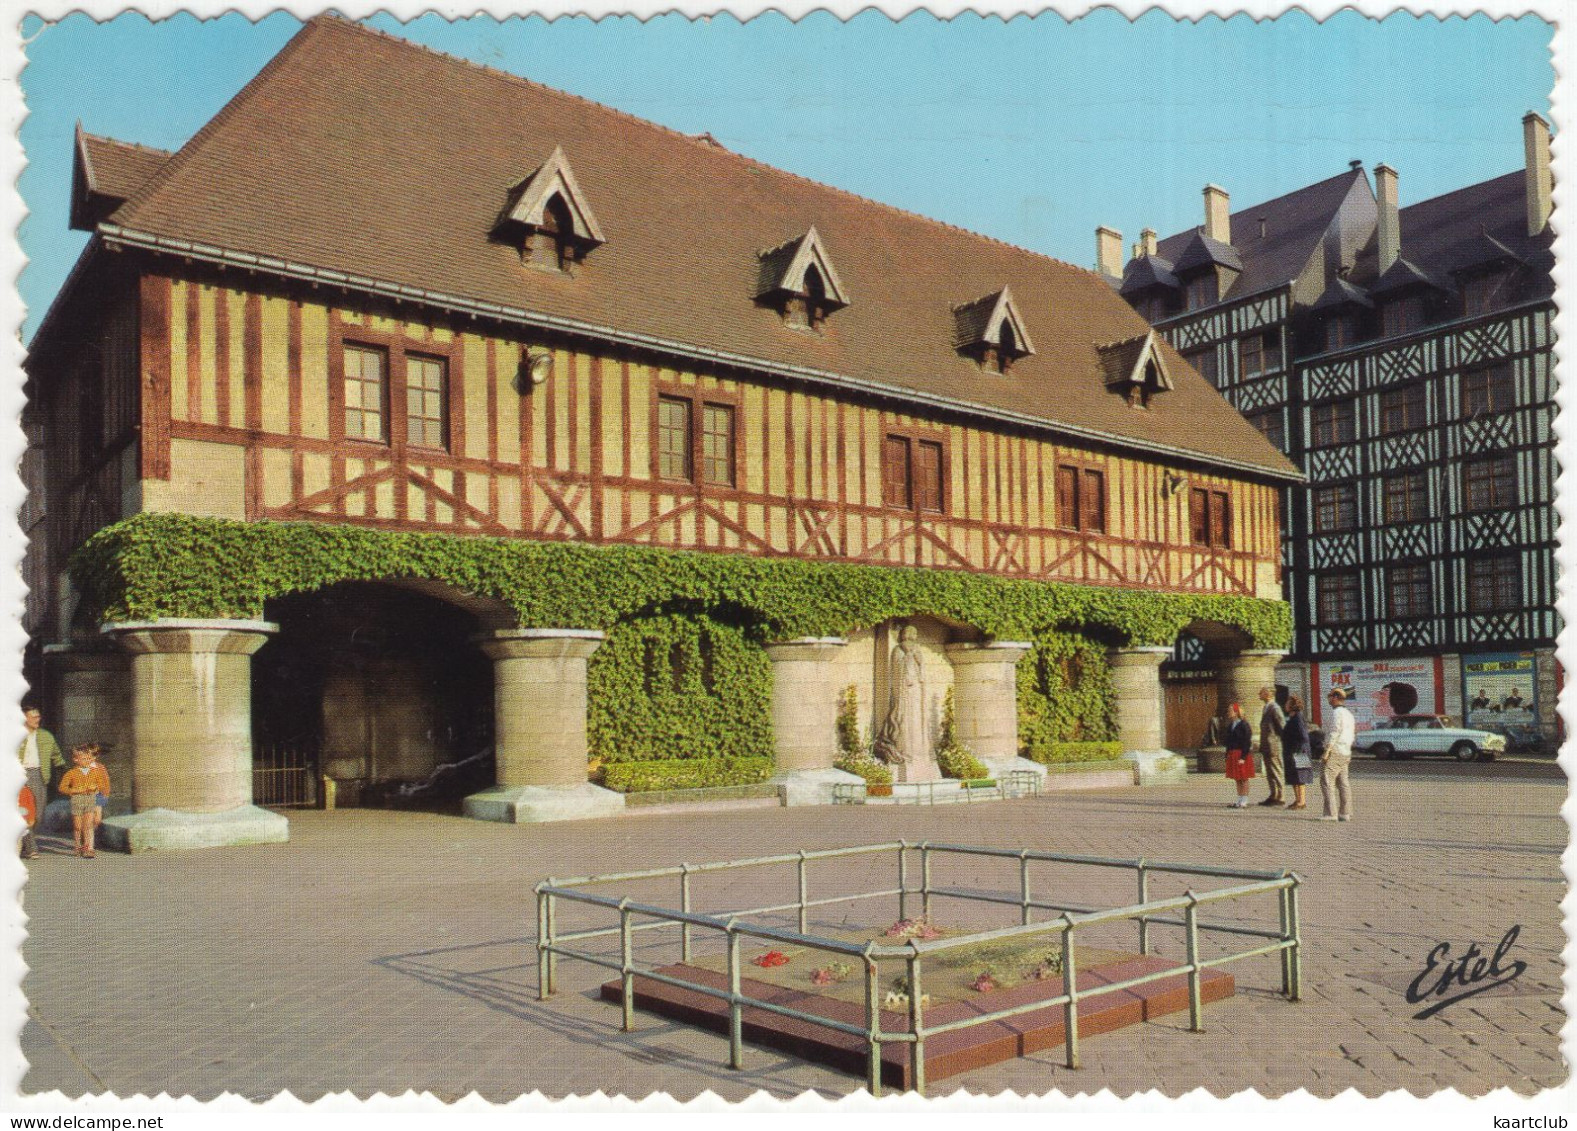 Rouen: SIMCA ARONDE P60 MONACO - La Place Du Marché, Statue Jeanne D'Arc - (France) - 1966 - Turismo